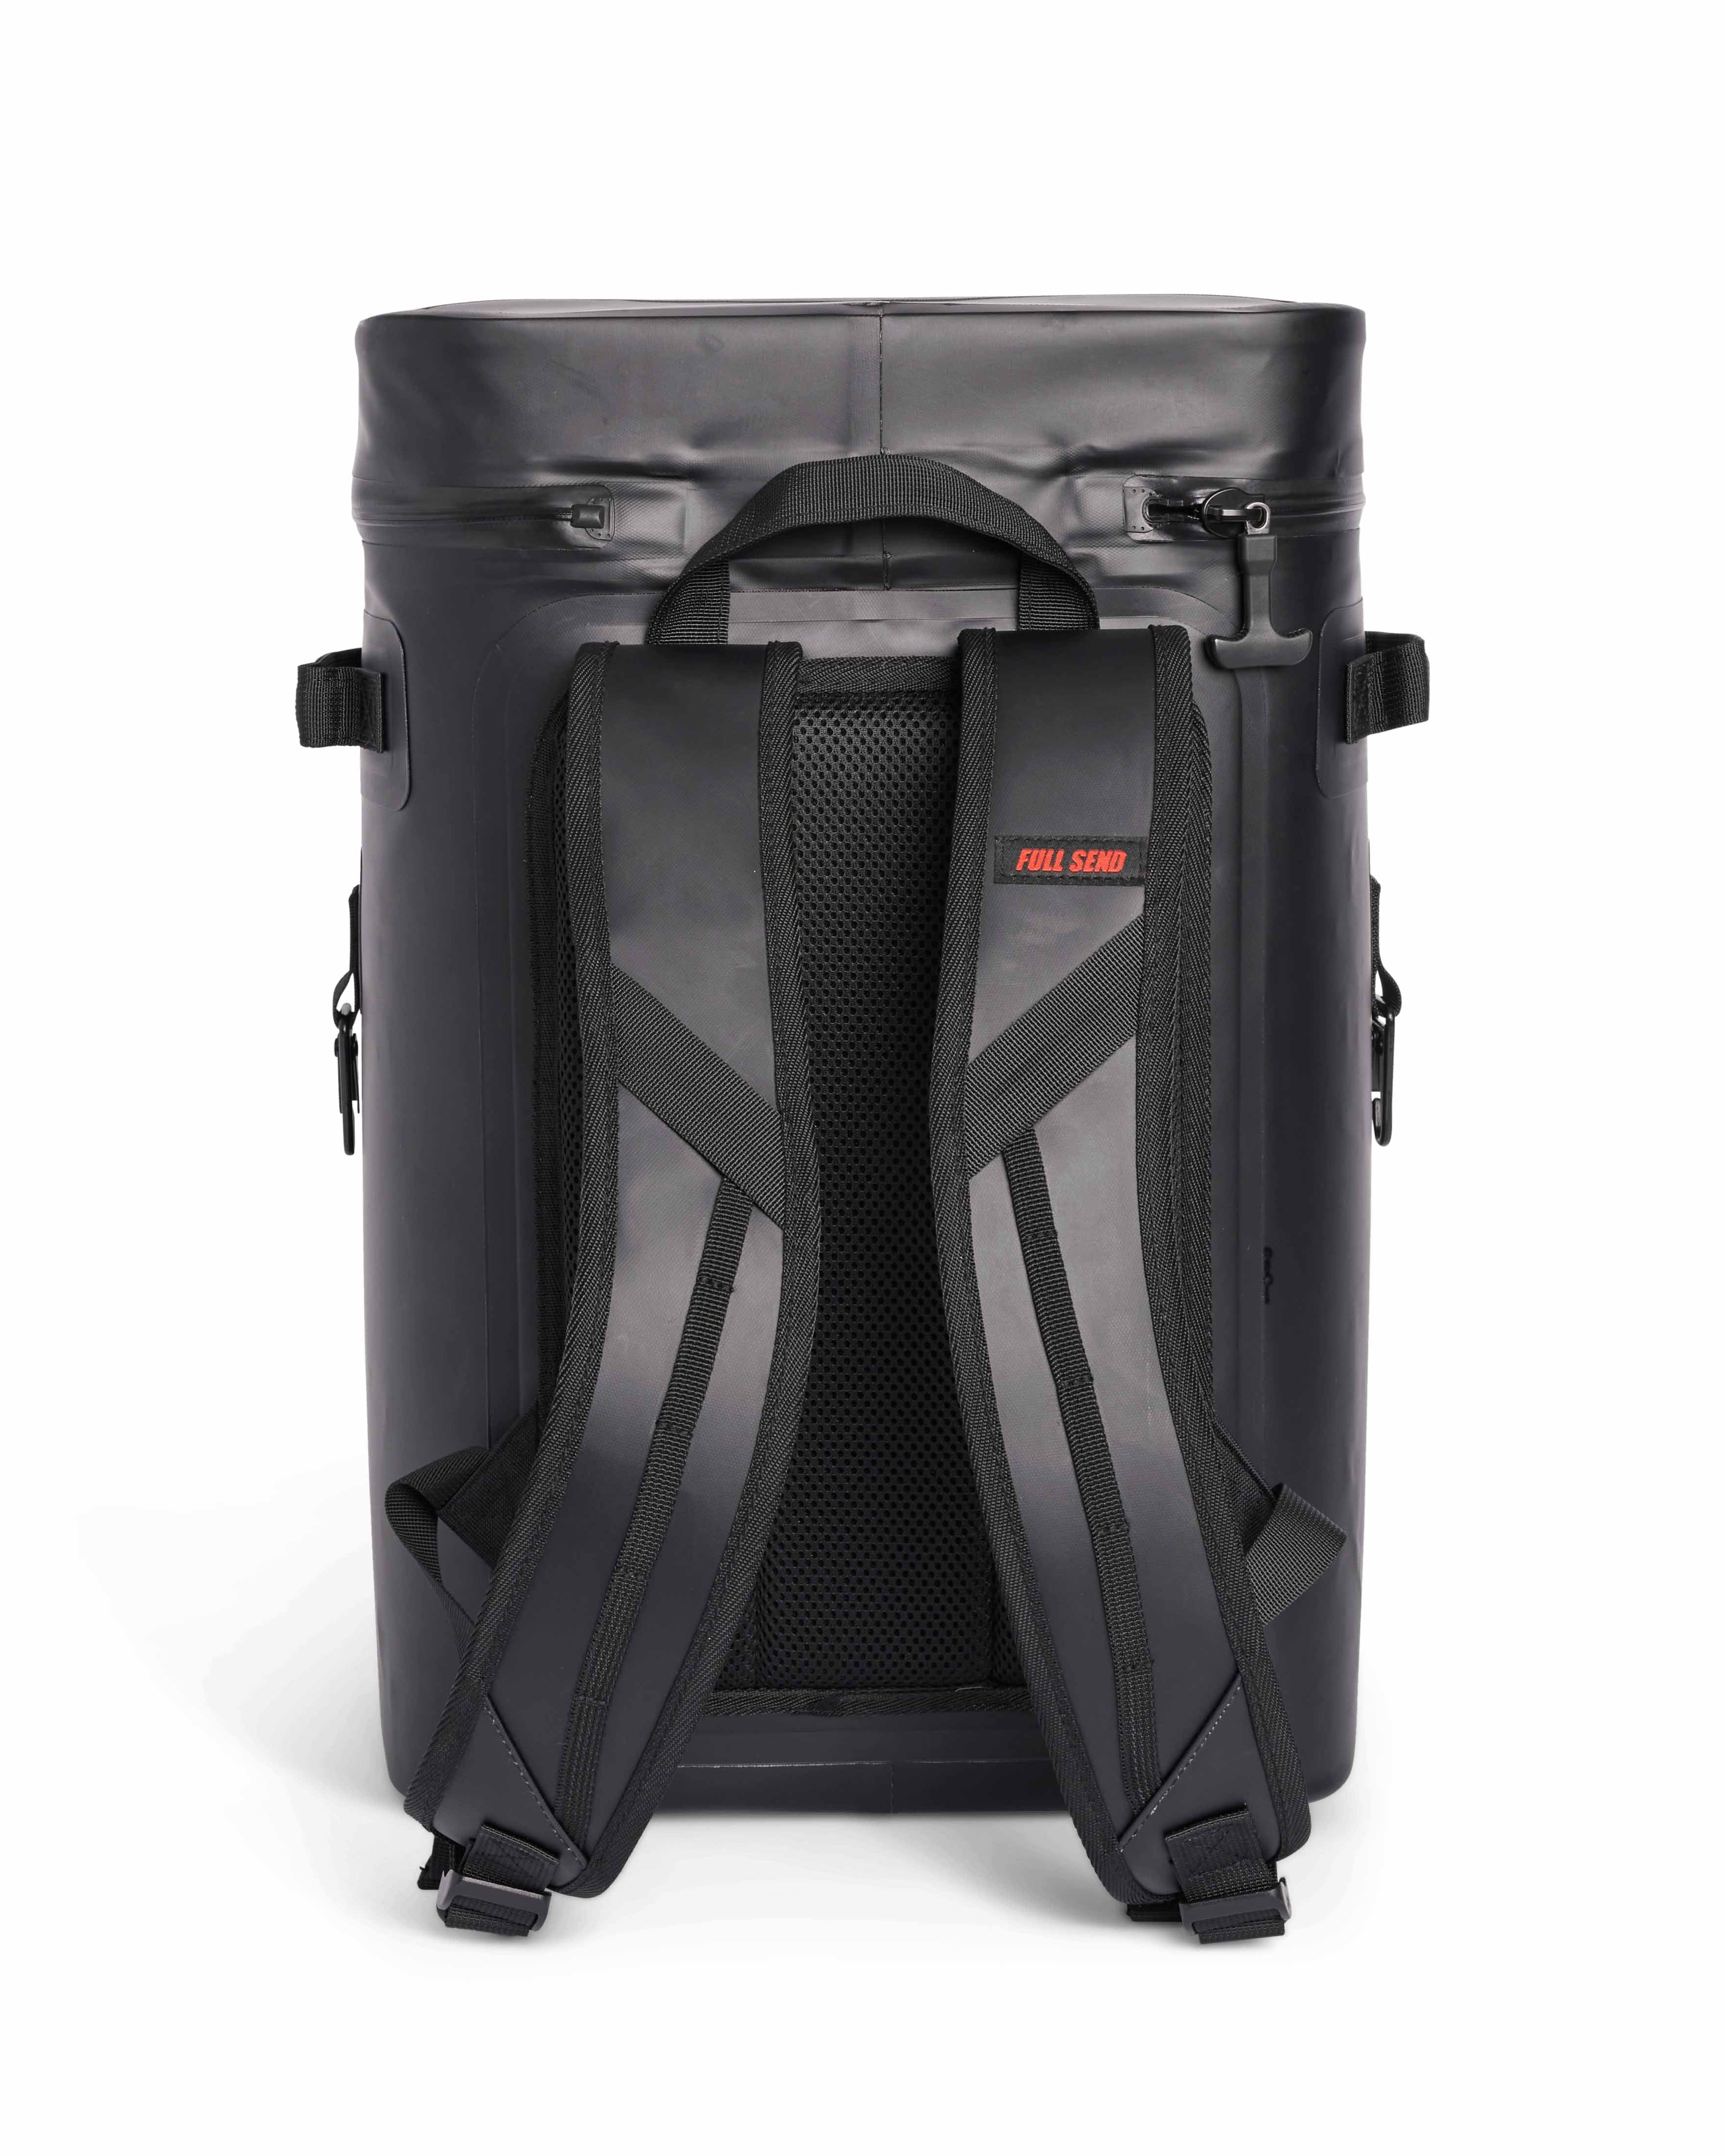 Happy Dad Cooler Backpack (Black)